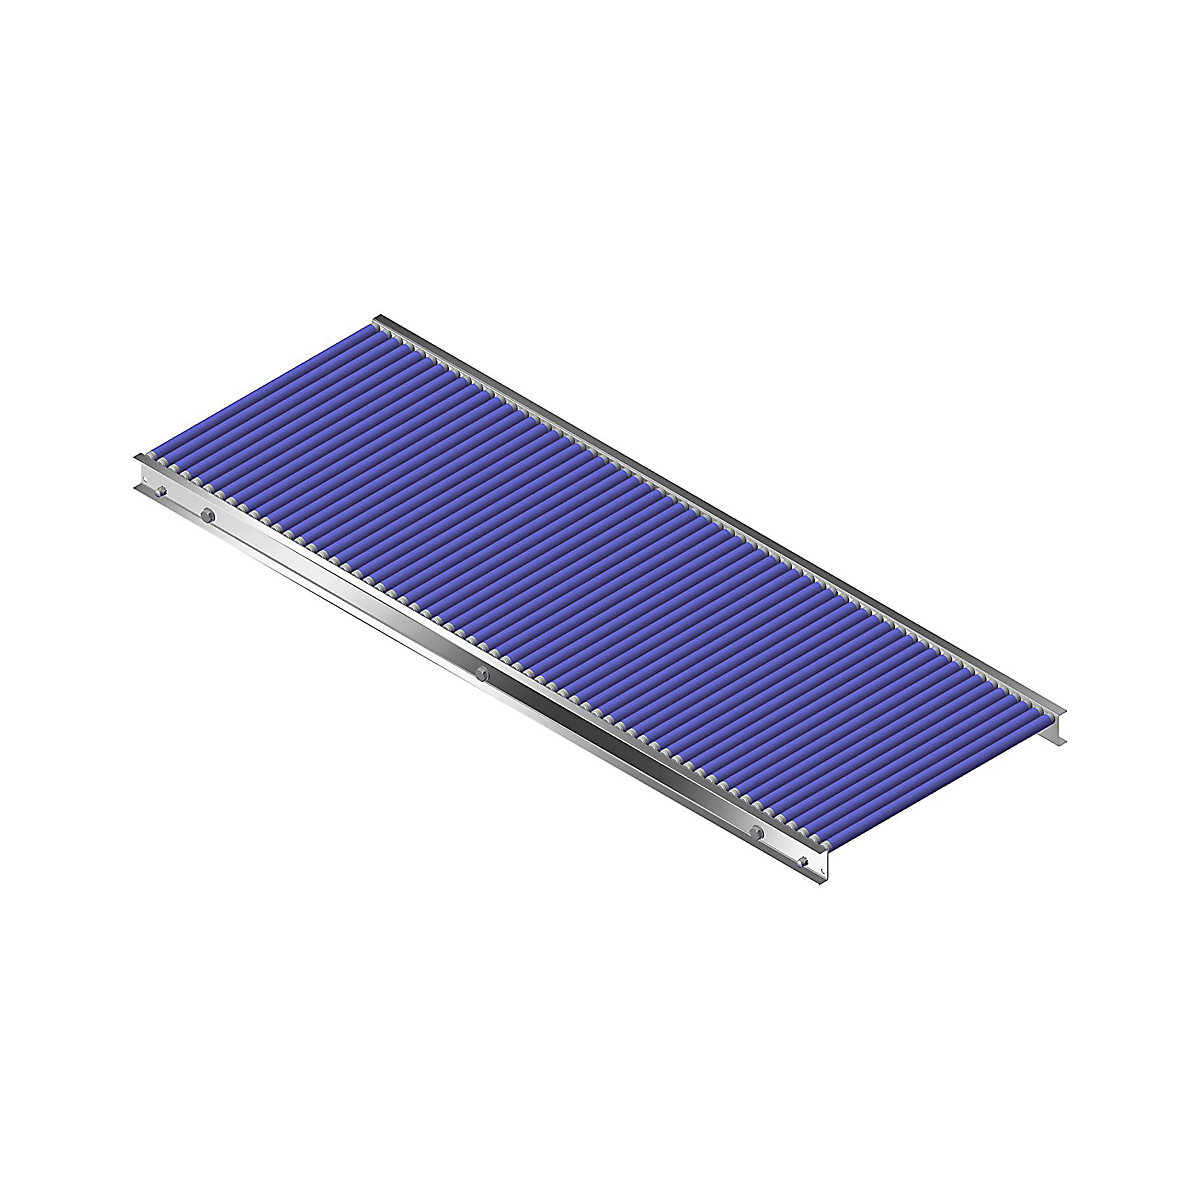 Gura – Malá valčeková dráha, hliníkový rám s plastovými valčekmi, šírka dráhy 500 mm, vzdialenosť osí 25 mm, dĺžka 1,5 m